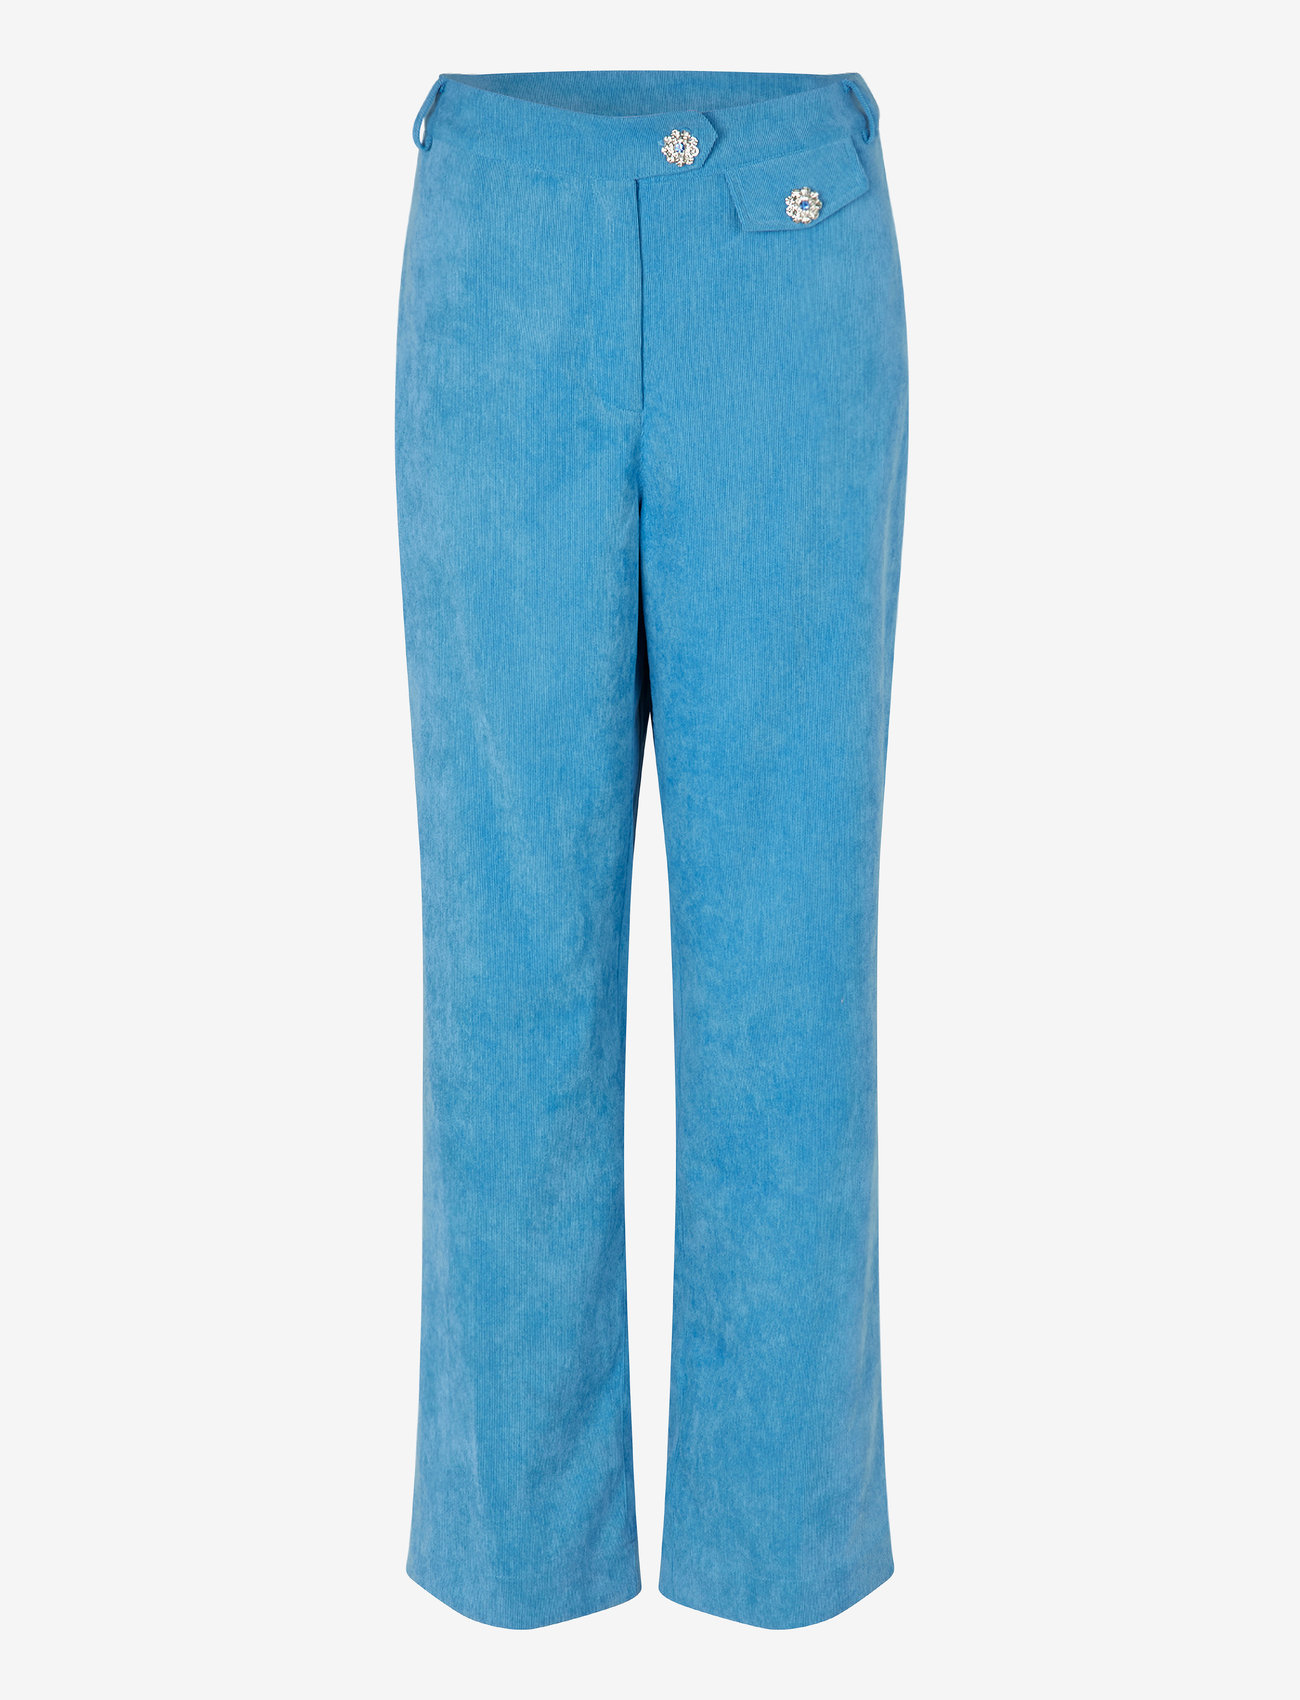 Cras - Celinecras Pants - broeken med straight ben - azure blue - 0